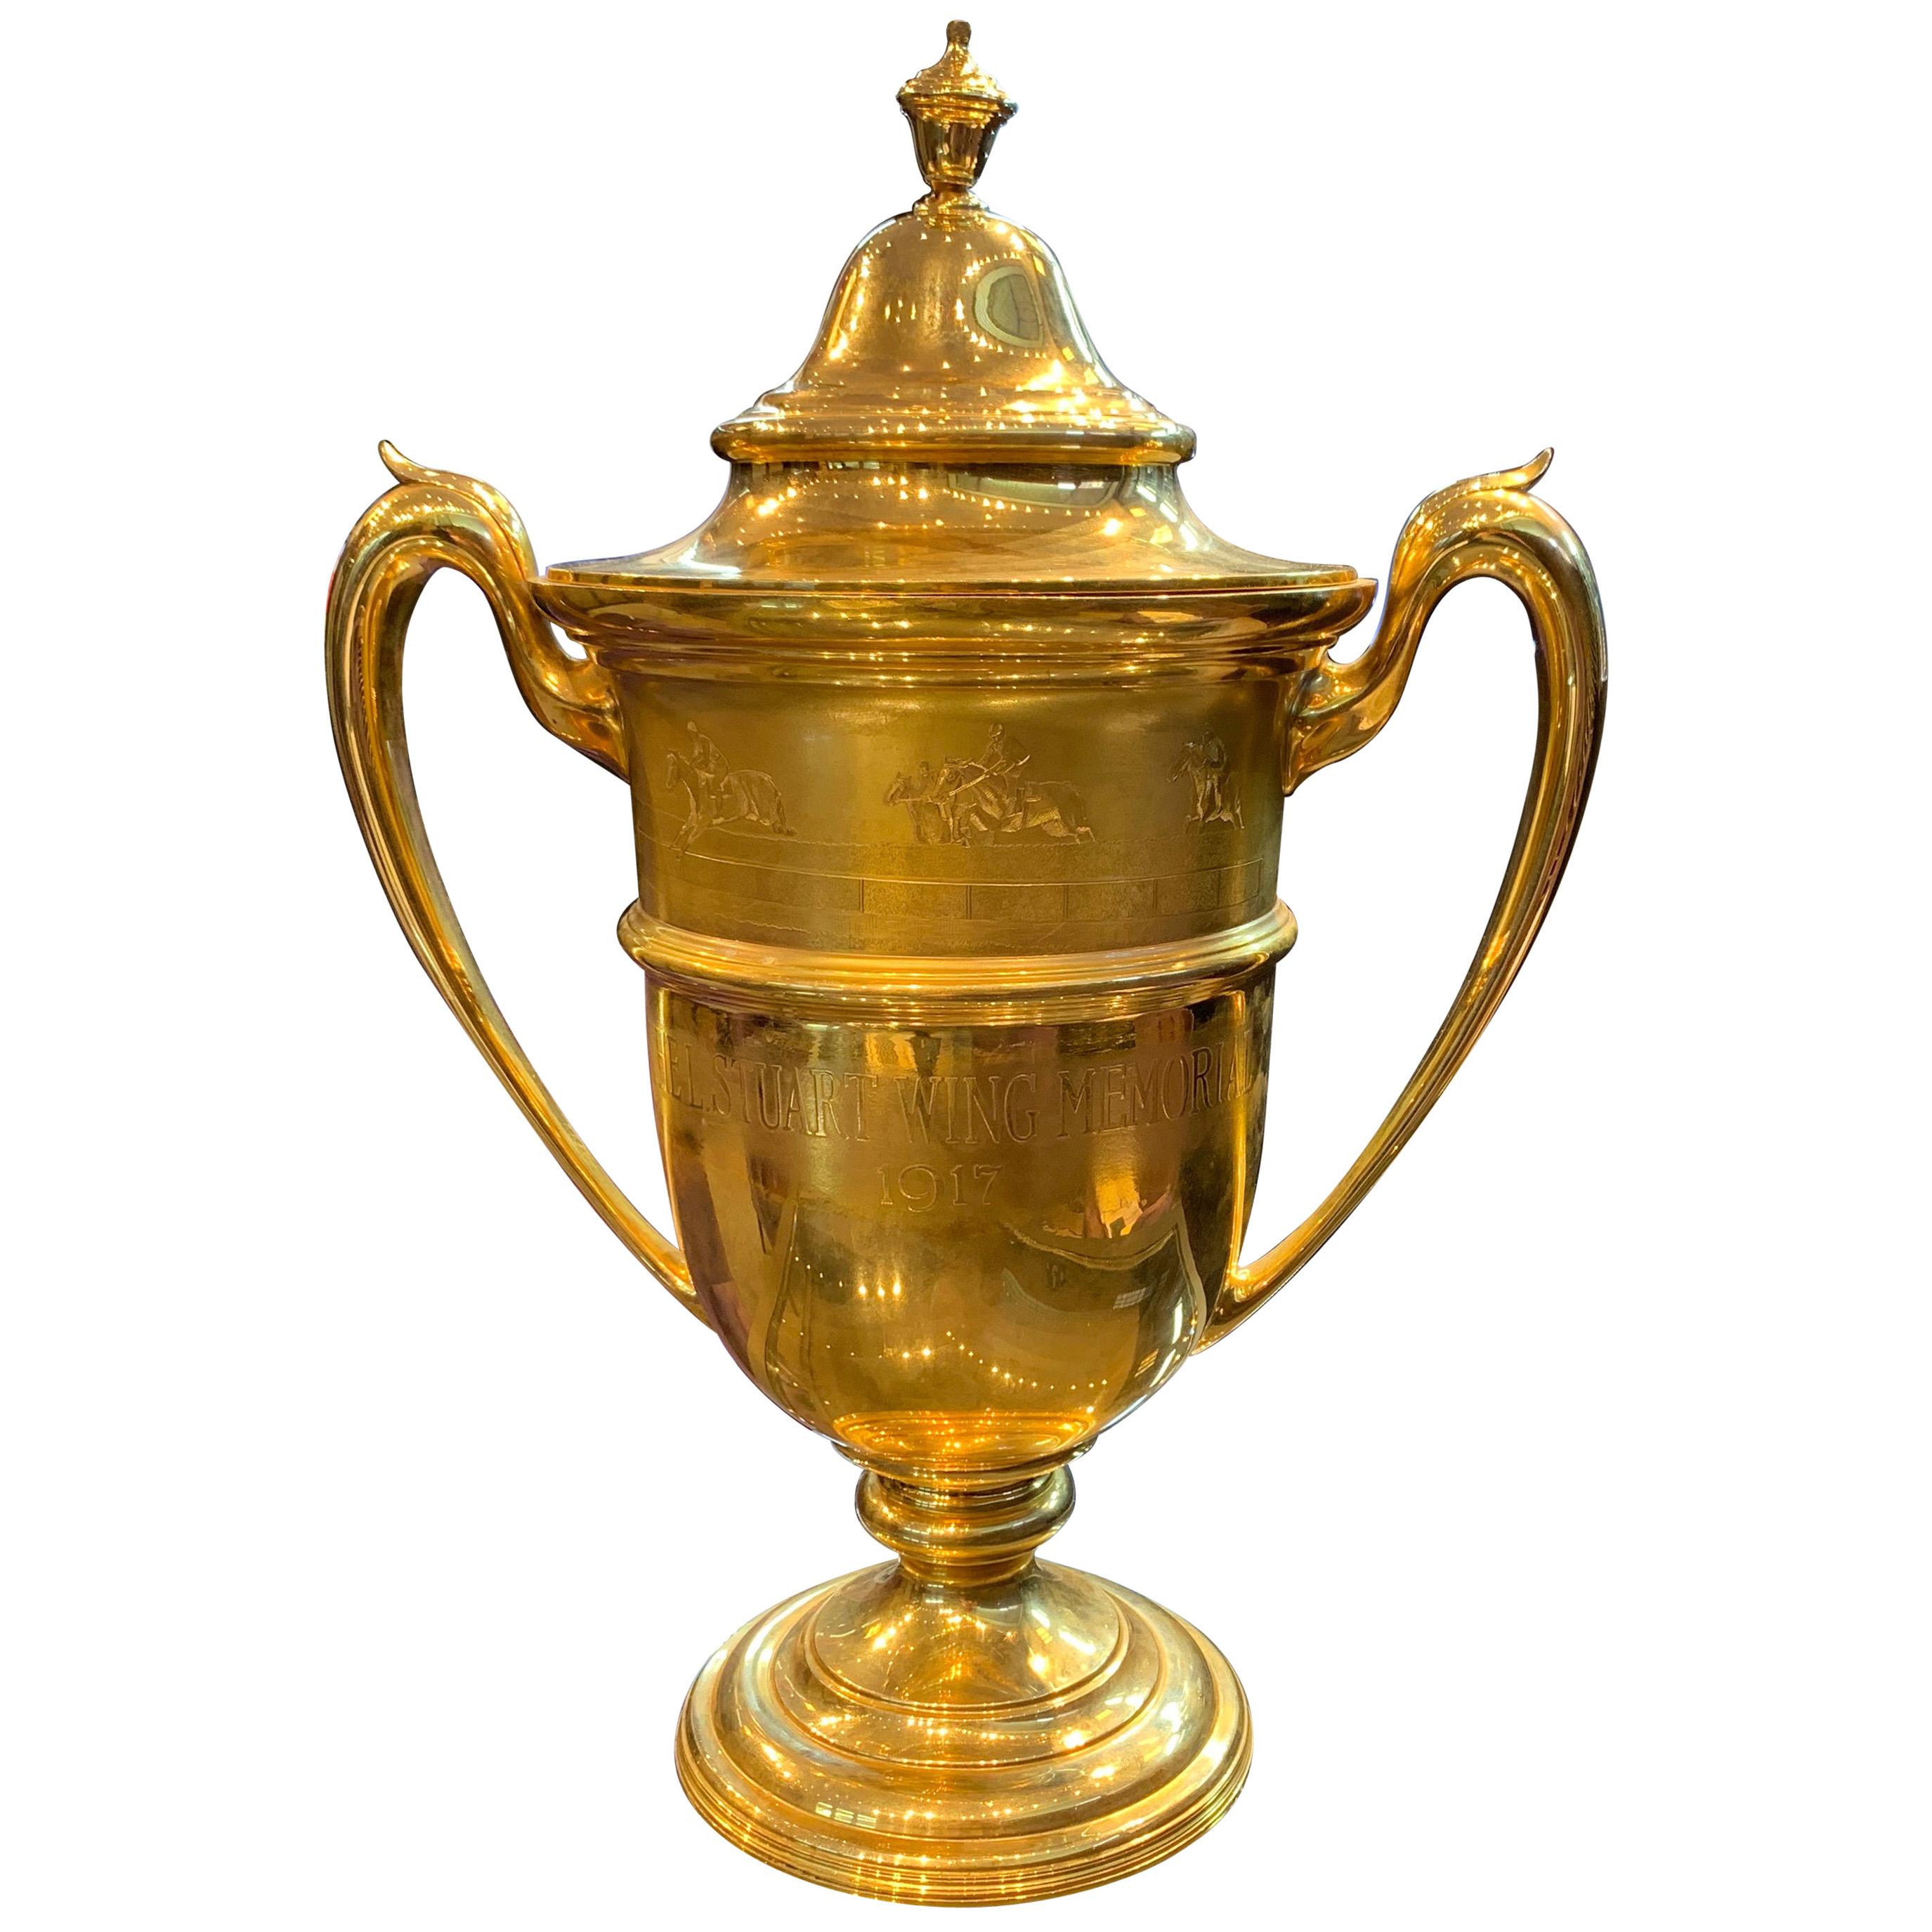 Historische Gold-Reitertrophäe "Cup" von Black Starr und Frost